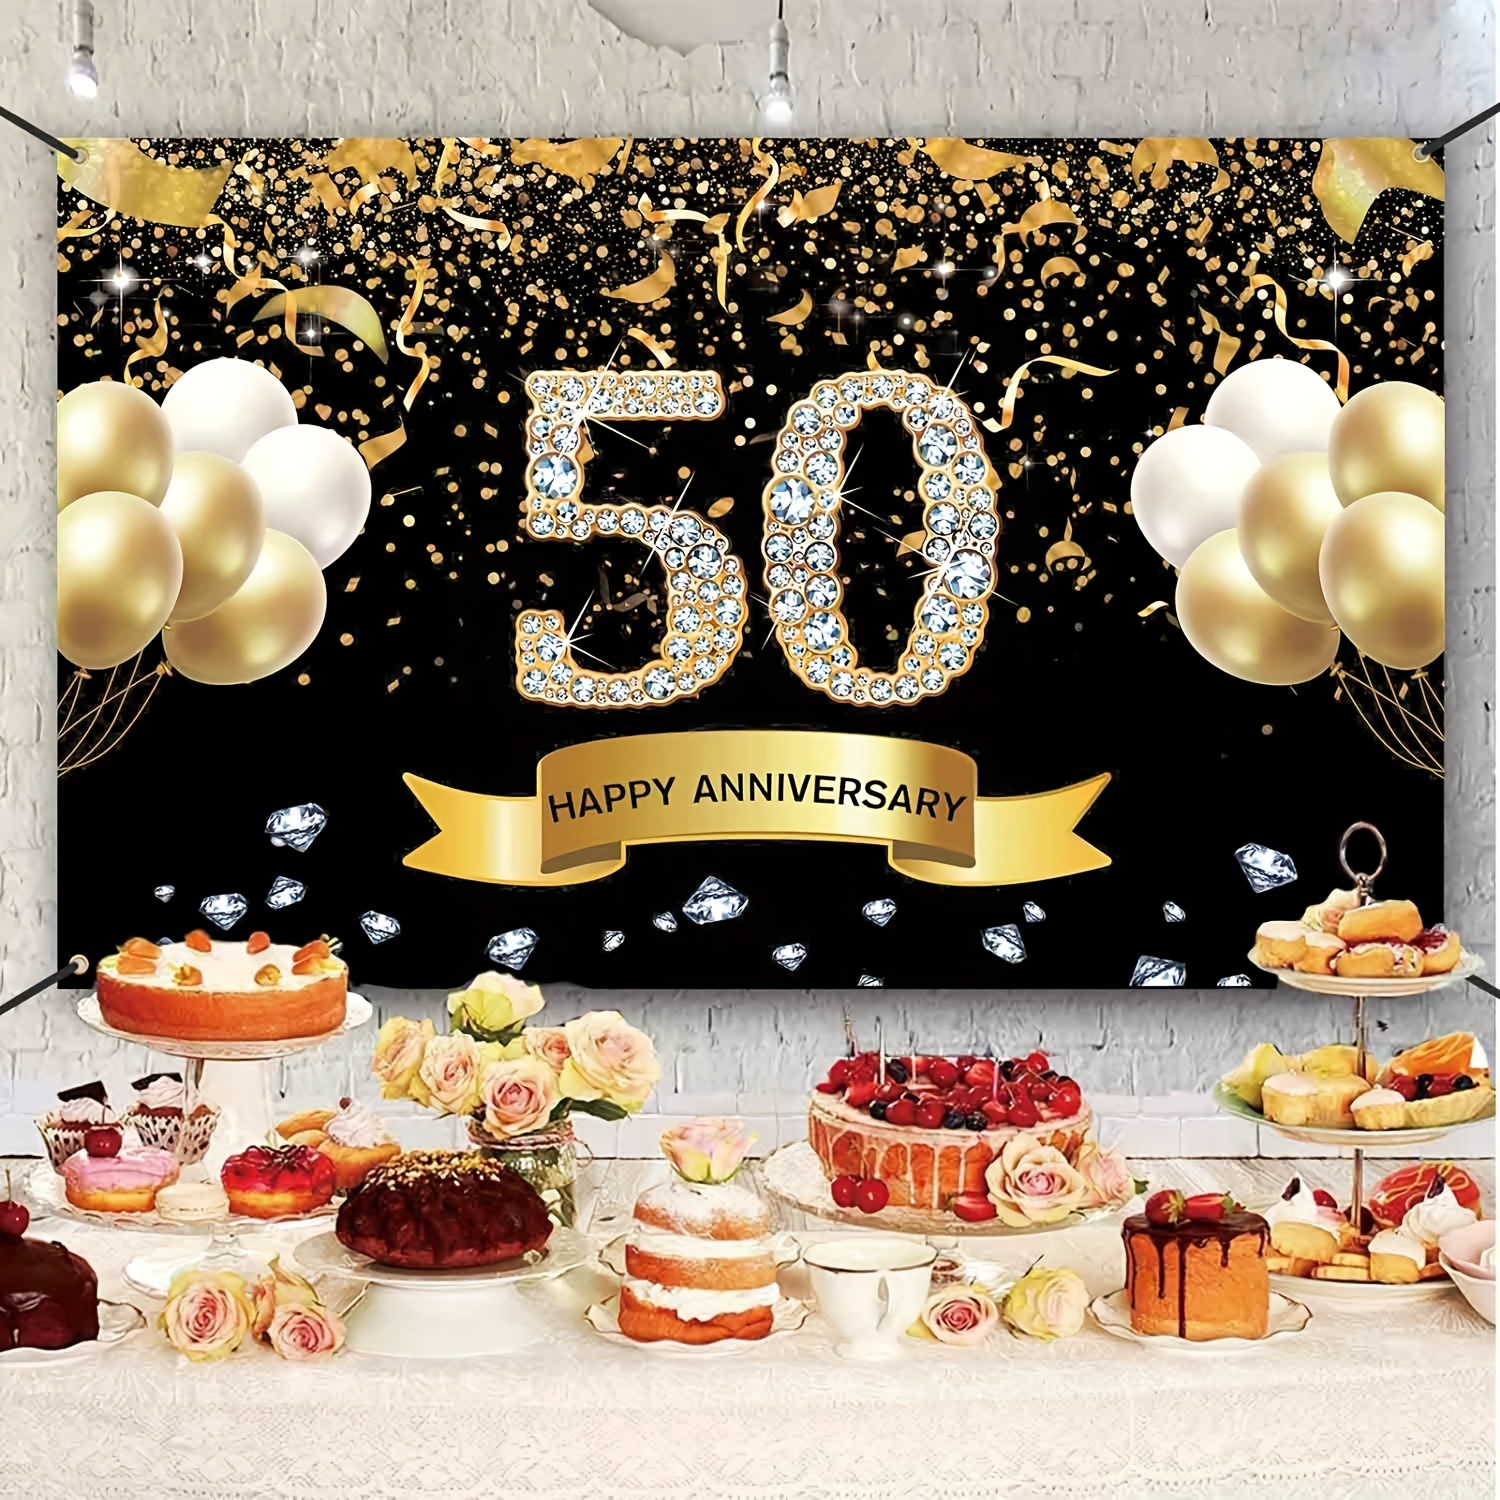 ANIVERSARIO DE ORO 50 aniversario Decoraciones de fiesta